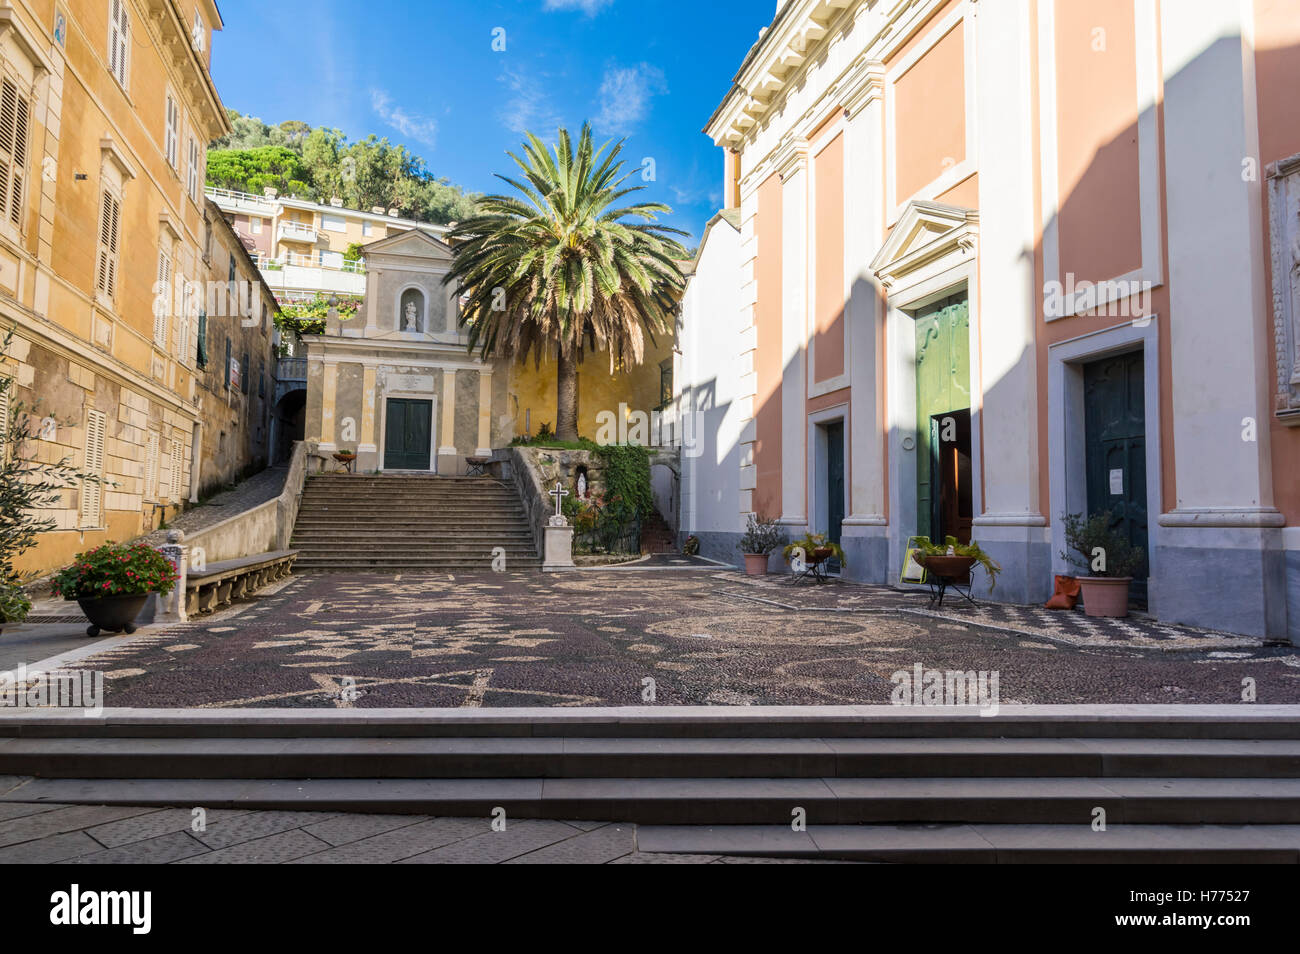 Small cobblestone-paved square in the town center of Moneglia, Liguria, Italy. Stock Photo